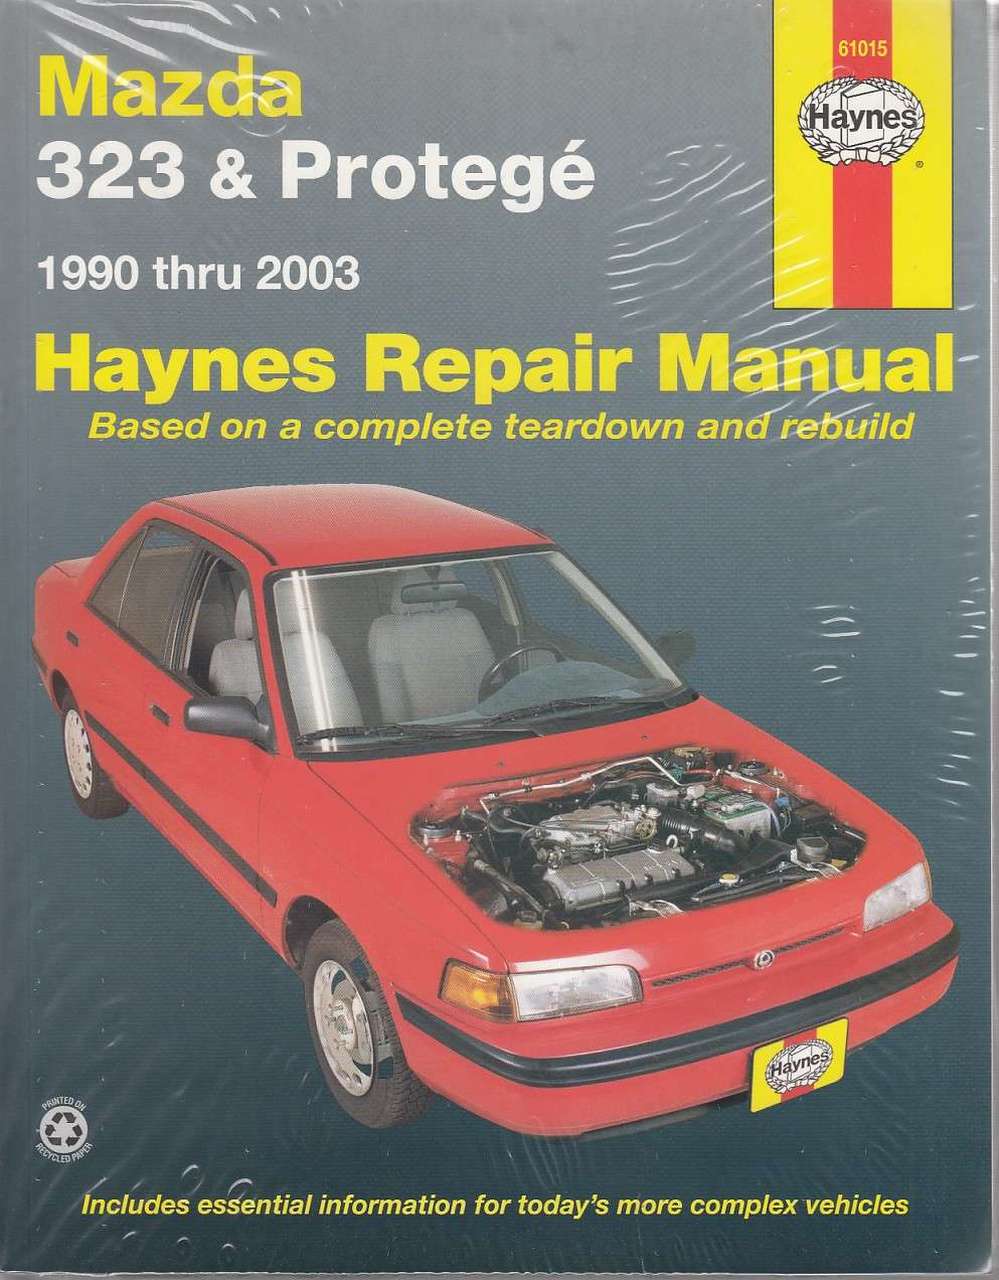 Free 2001 mazda protege repair manual